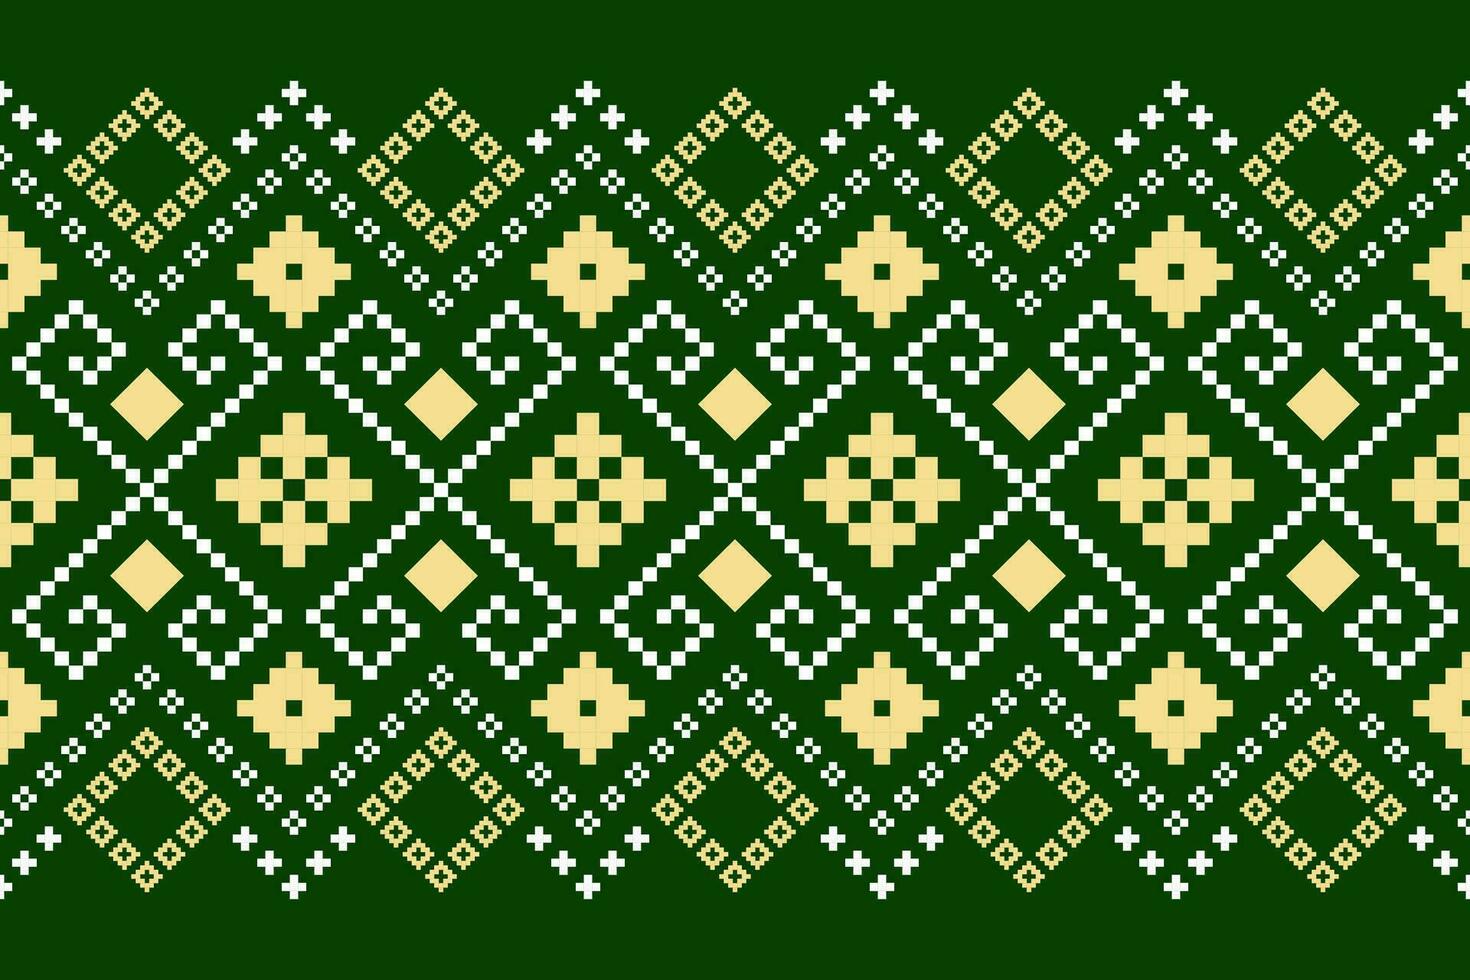 verde cruzar puntada vistoso geométrico tradicional étnico modelo ikat sin costura modelo frontera resumen diseño para tela impresión paño vestir alfombra cortinas y pareo de malasia azteca africano indio indonesio vector